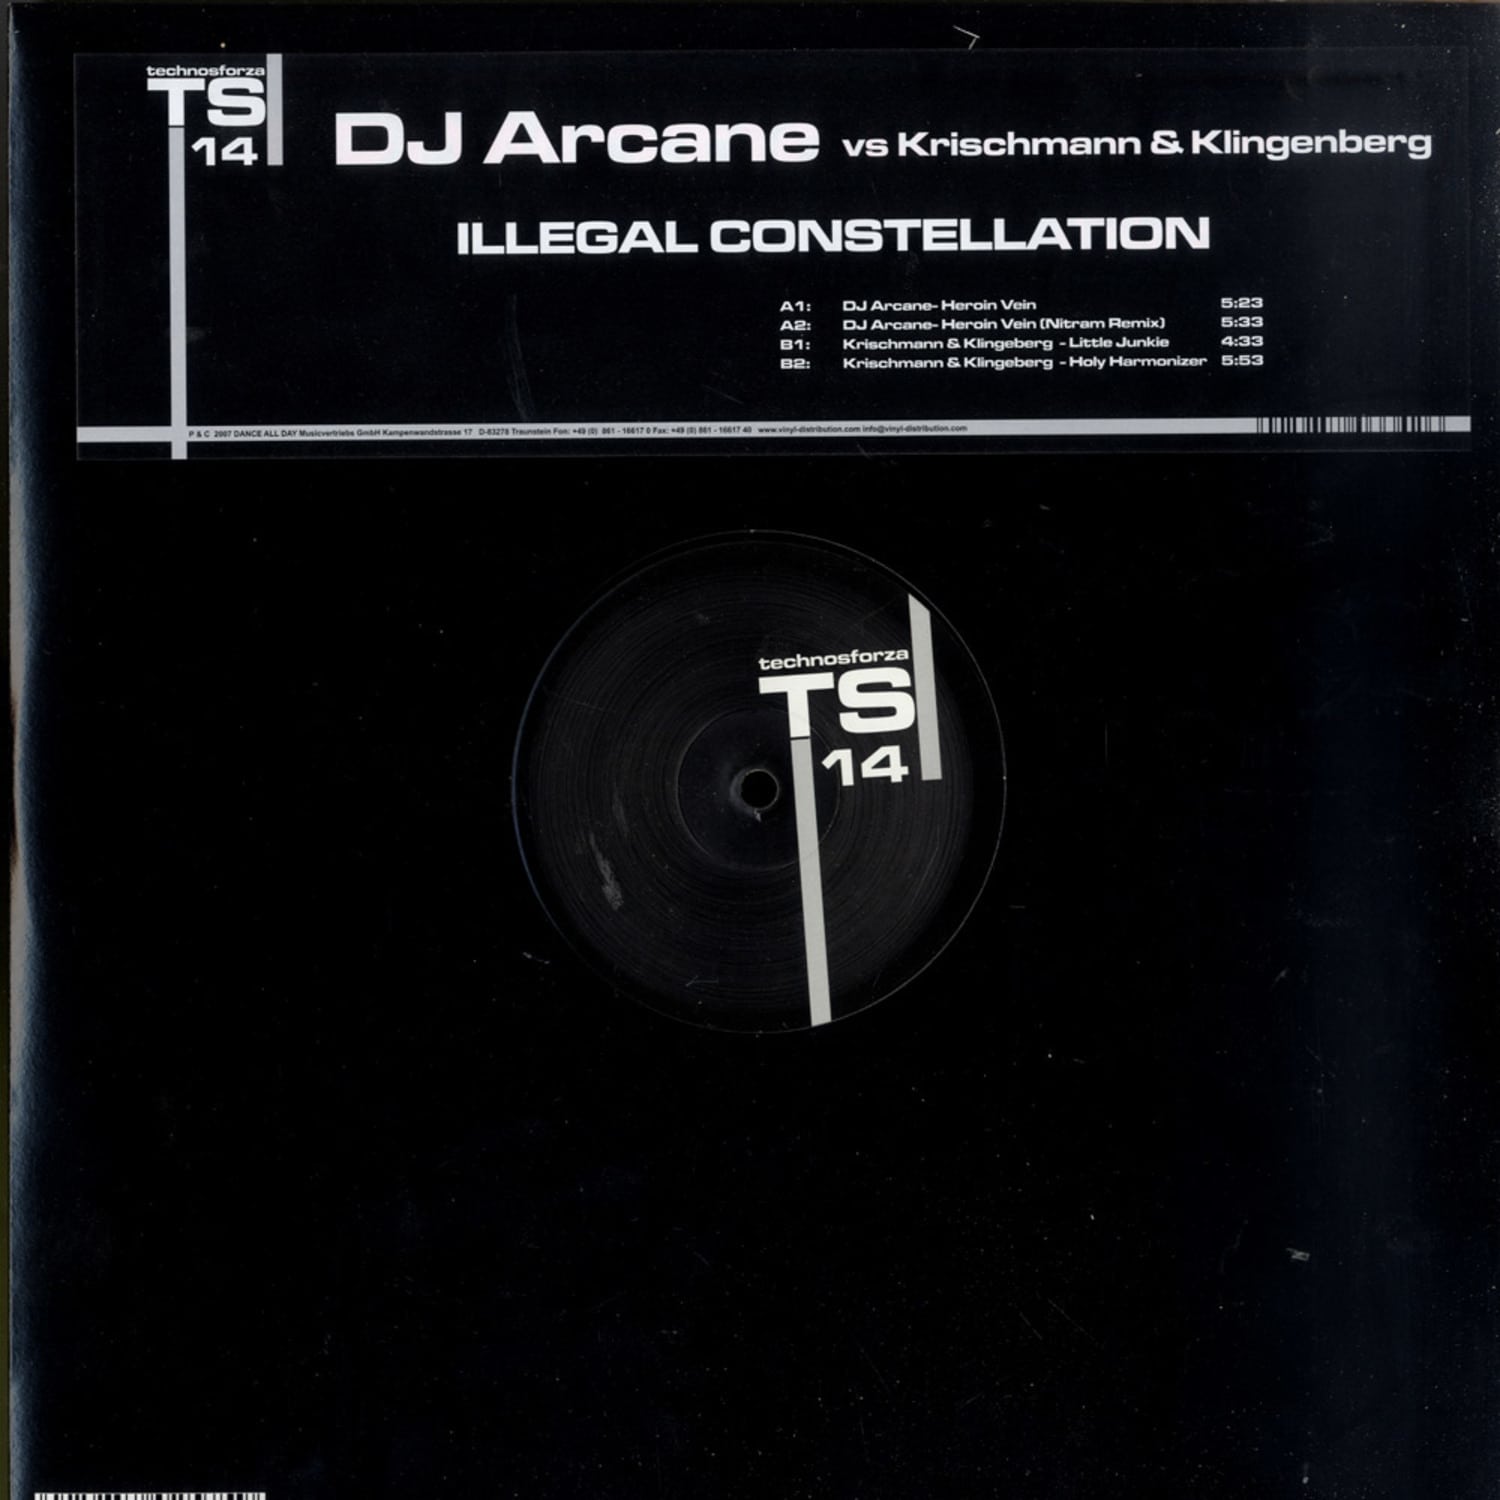 DJ Arcane vs Krischmann & Klingenberg - ILLEGAL CONSTELLATION